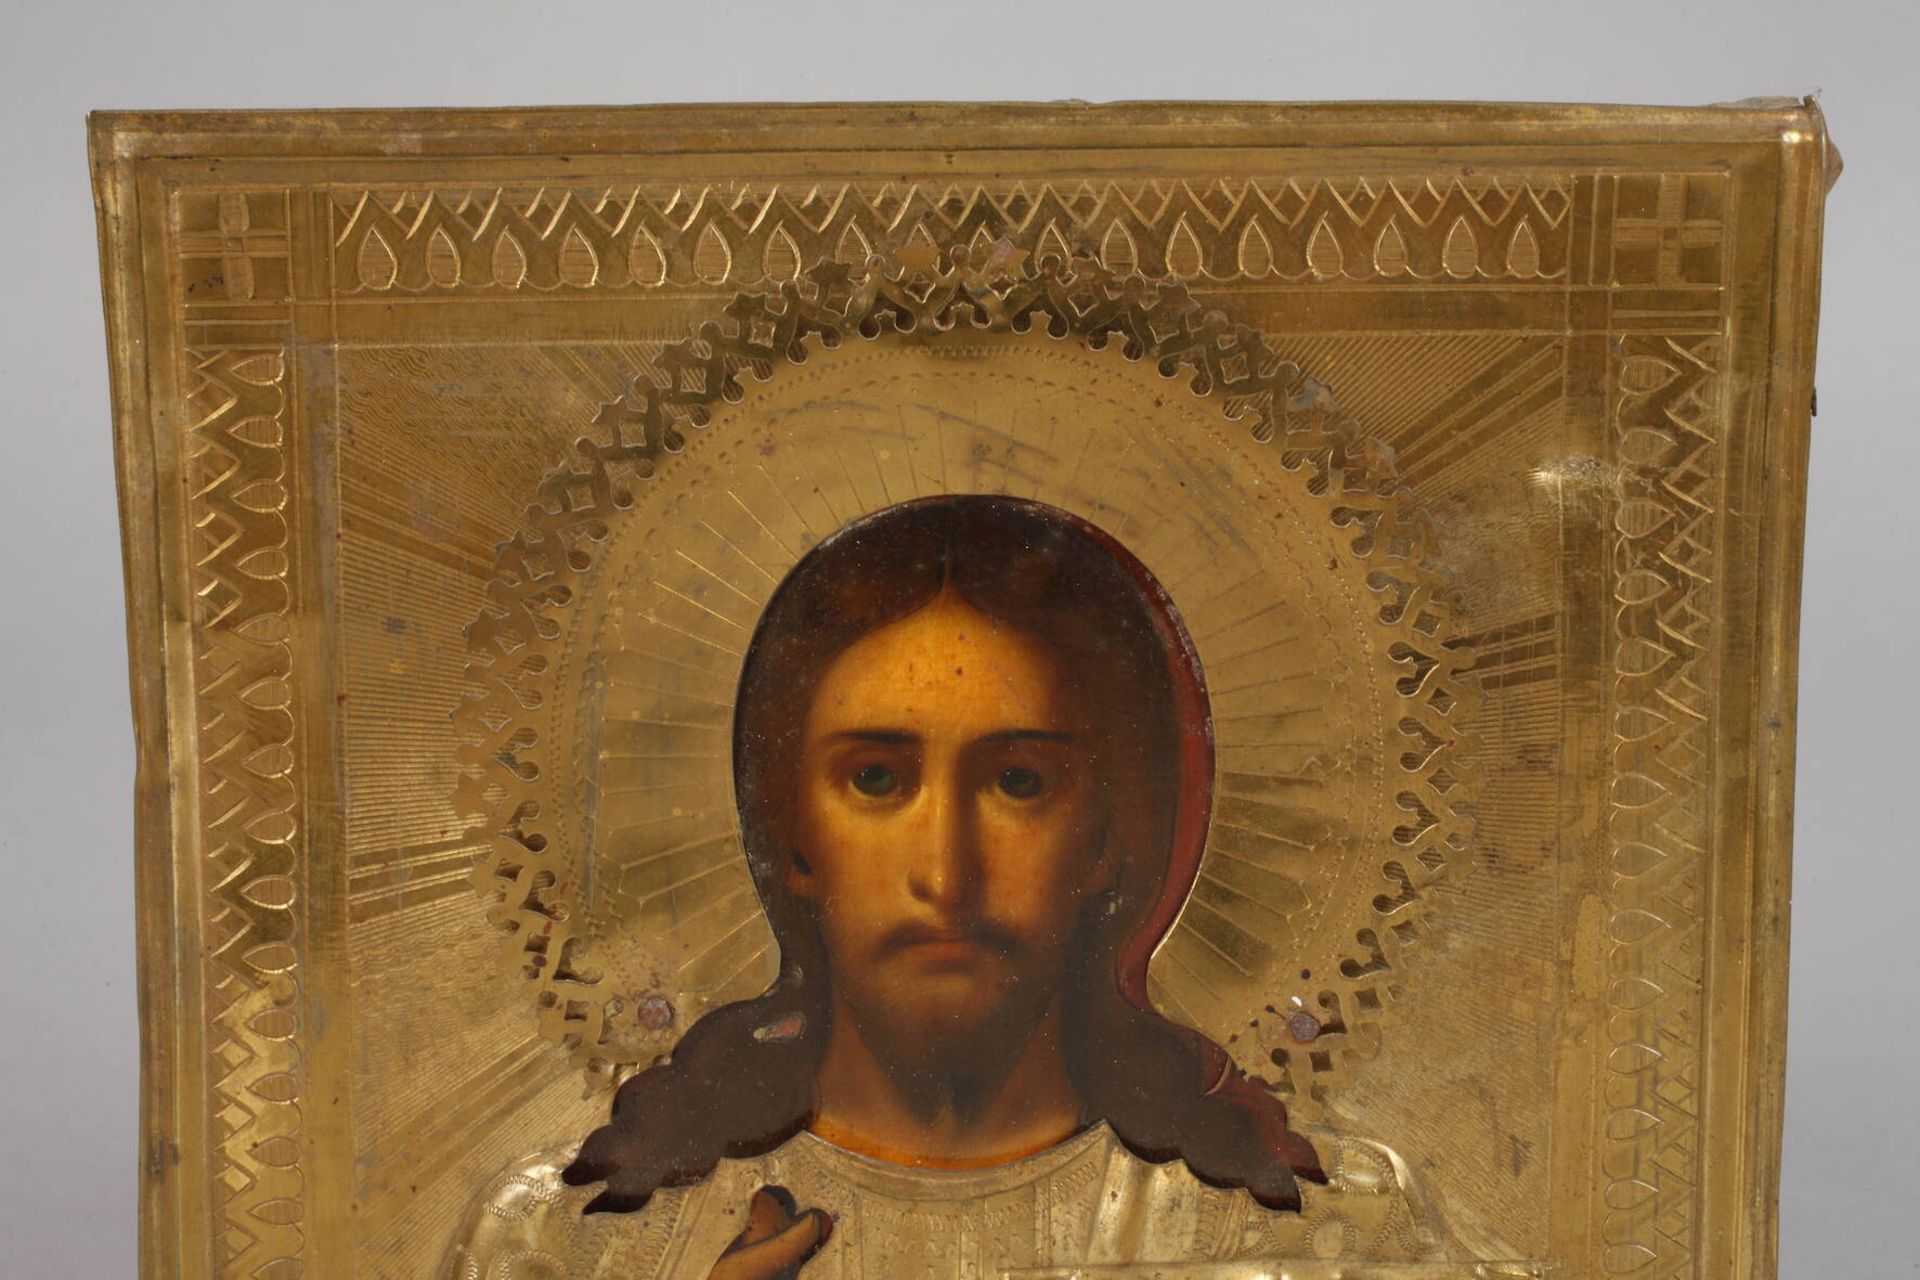 Ikone Christus Pantokrator19. Jh., kirchenslawisch bezeichnet, Tempera auf Nadelholzplatte, - Bild 3 aus 5